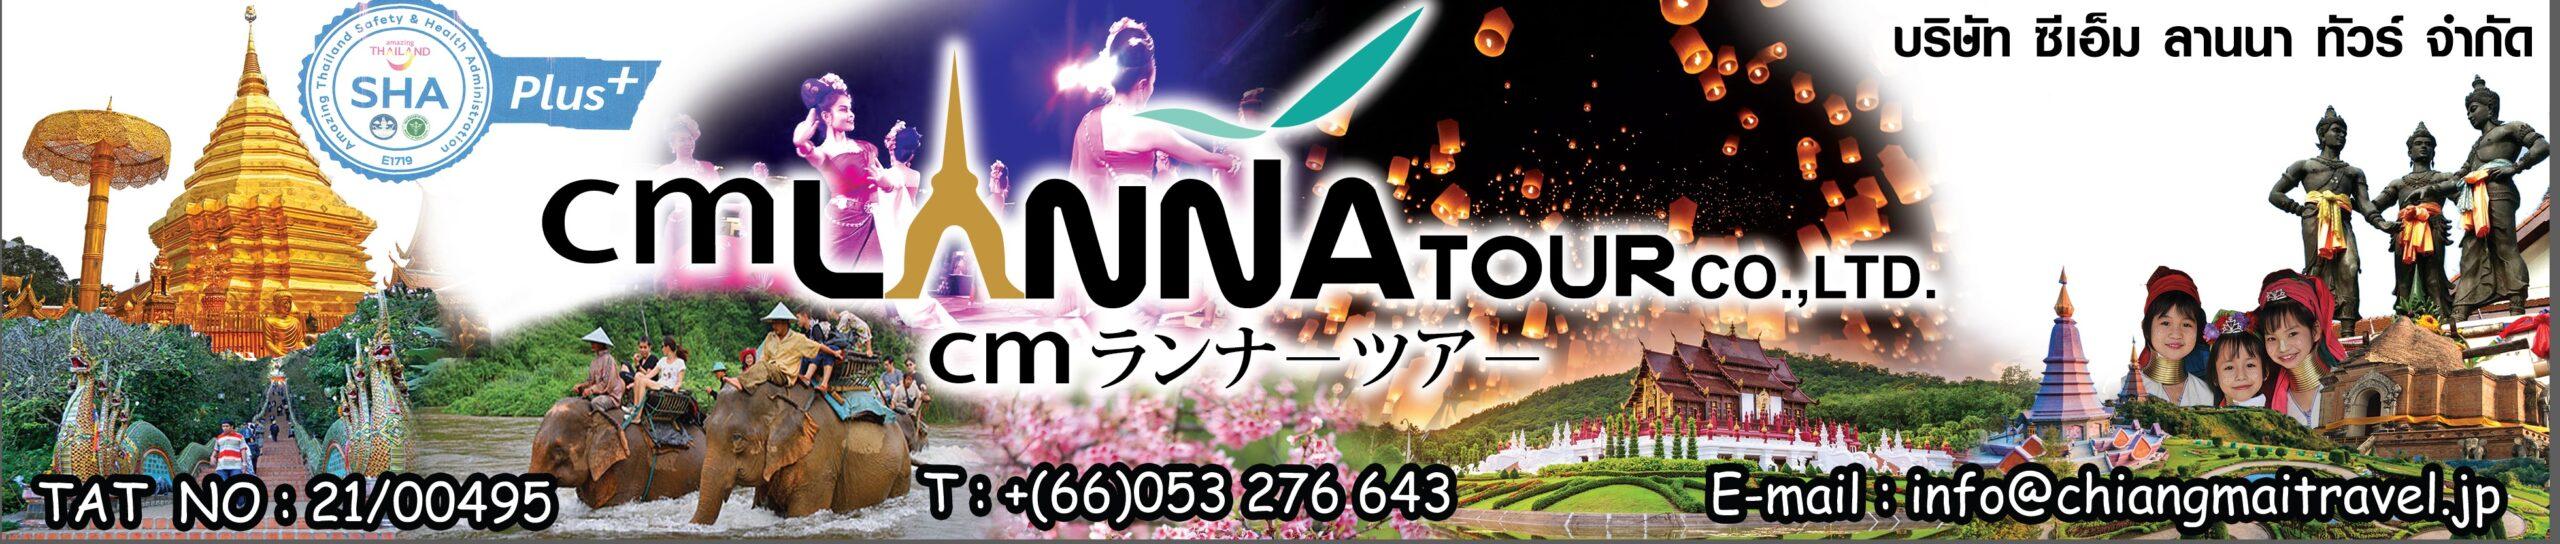 CM LANNA TOUR CO., LTD.